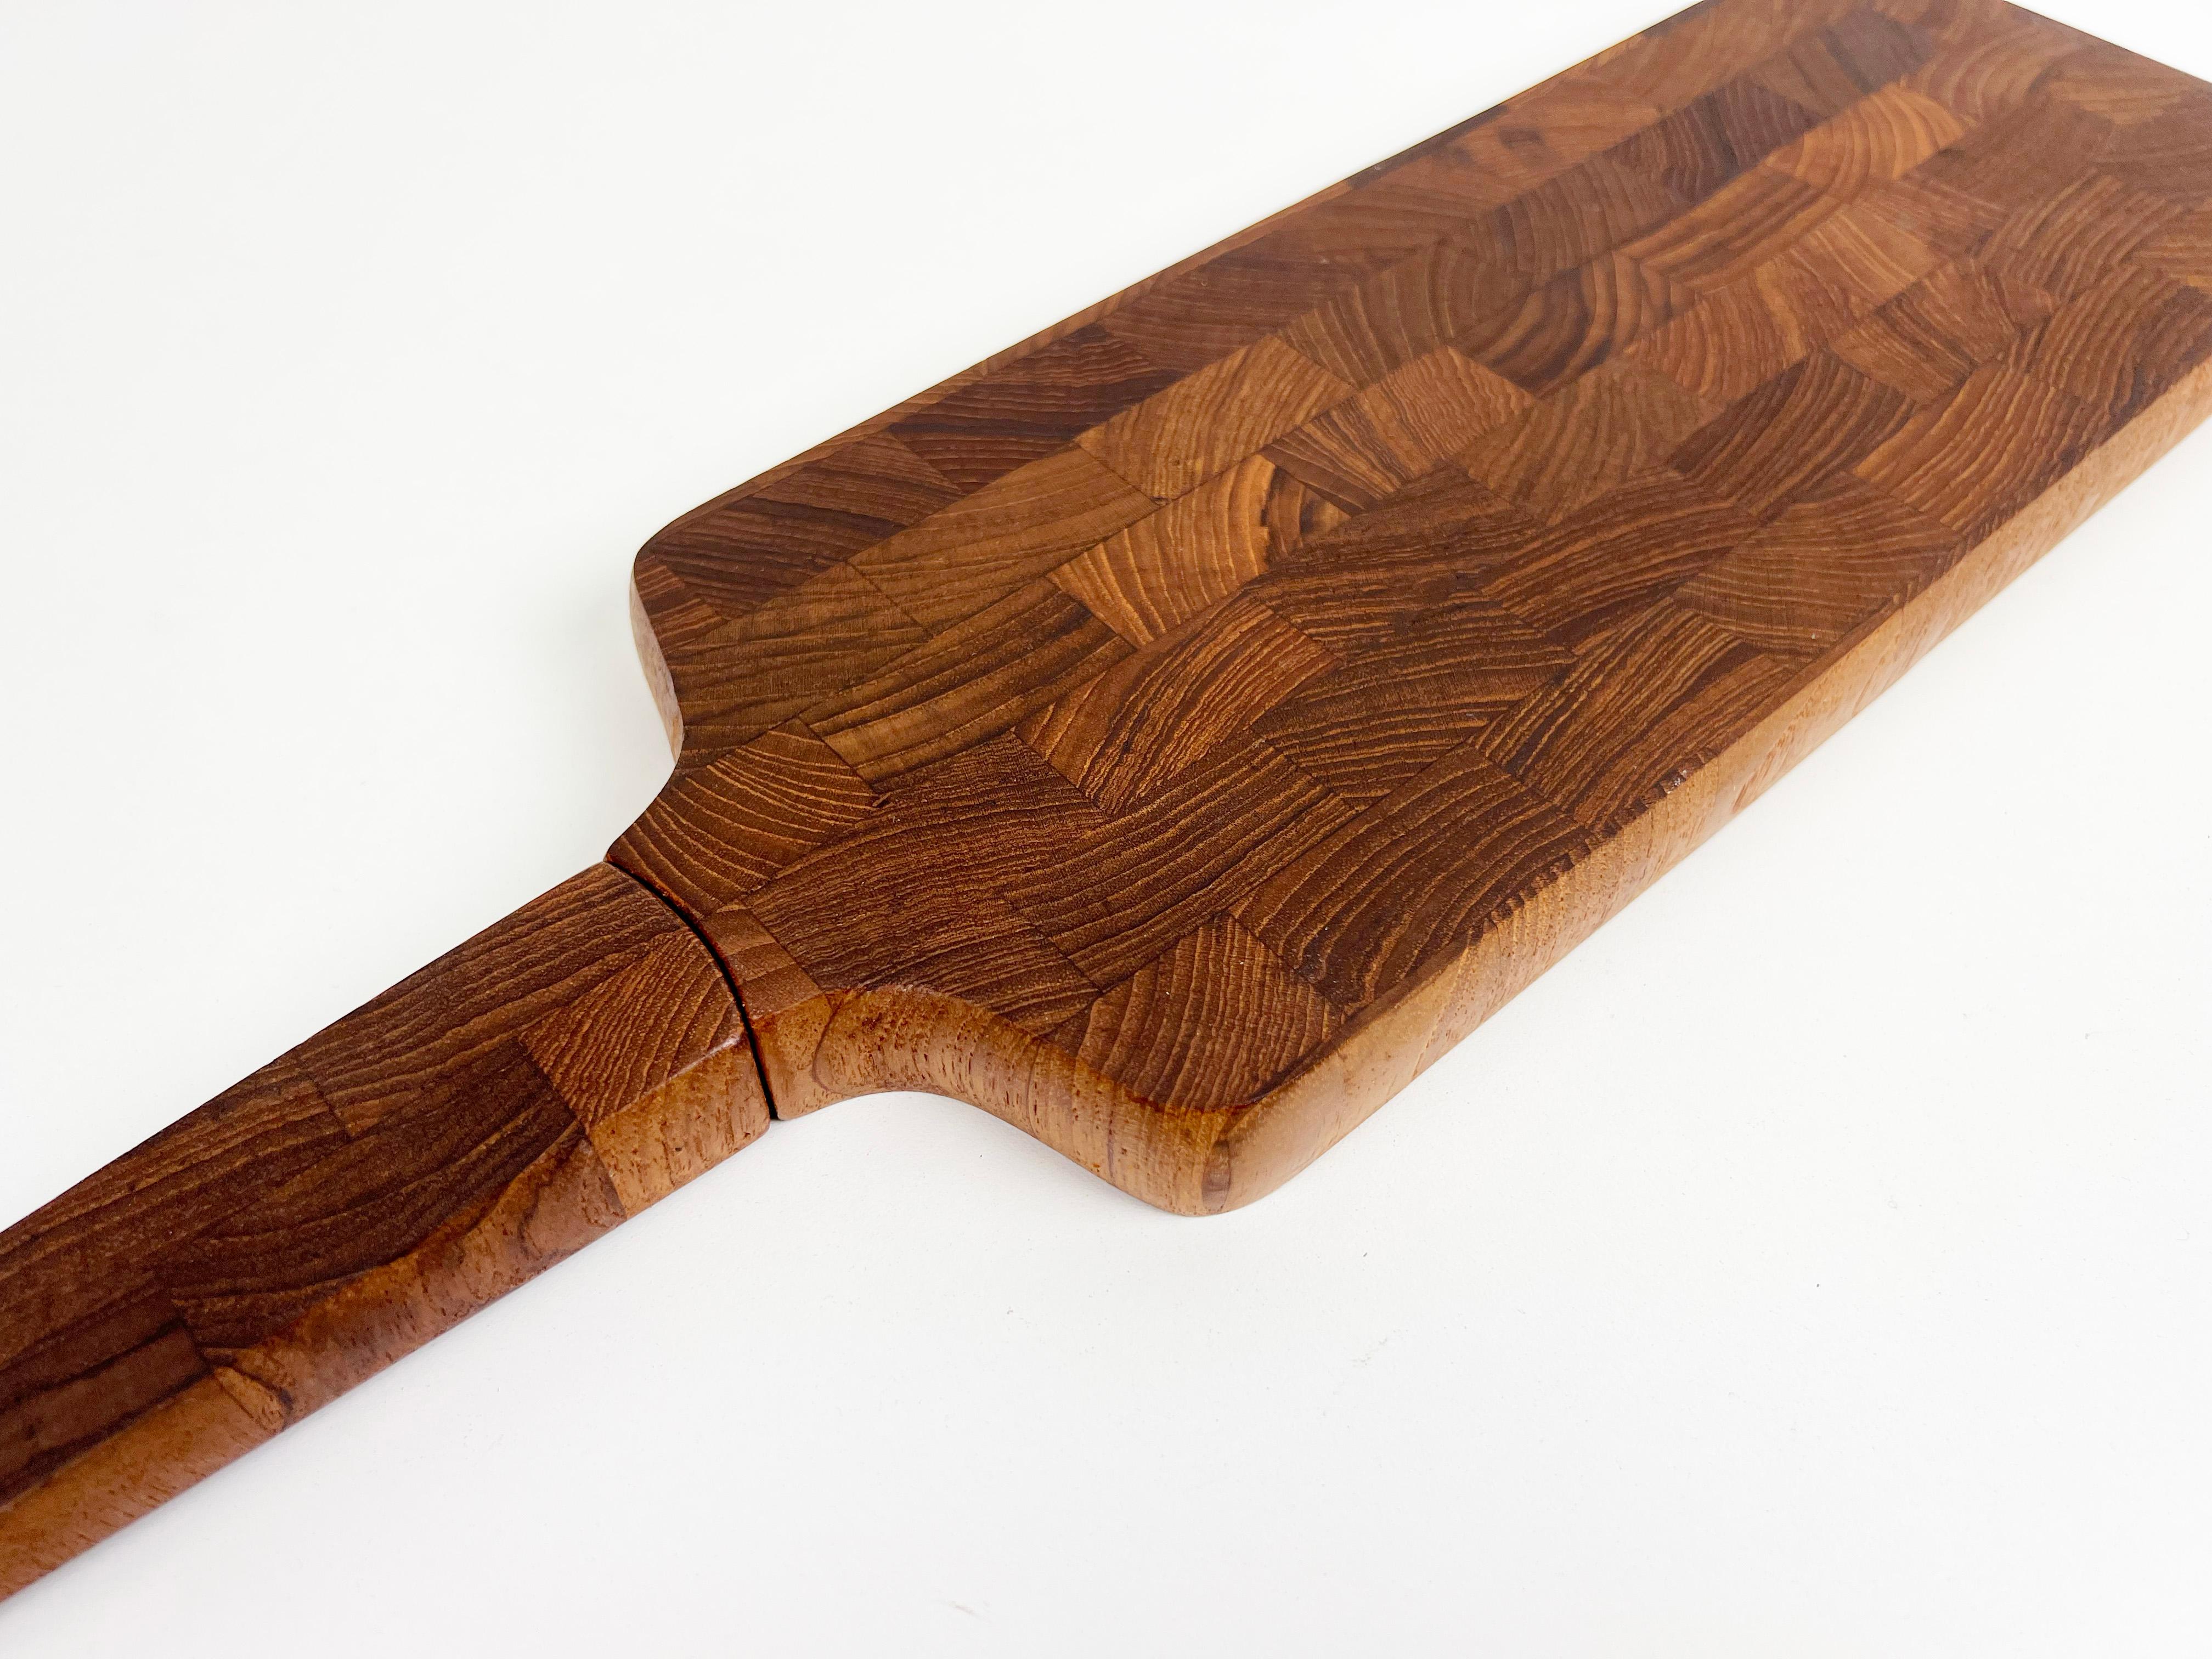 Dansk End Grain Teak Paddle Shaped Serving Board with Built in Knife For Sale 2